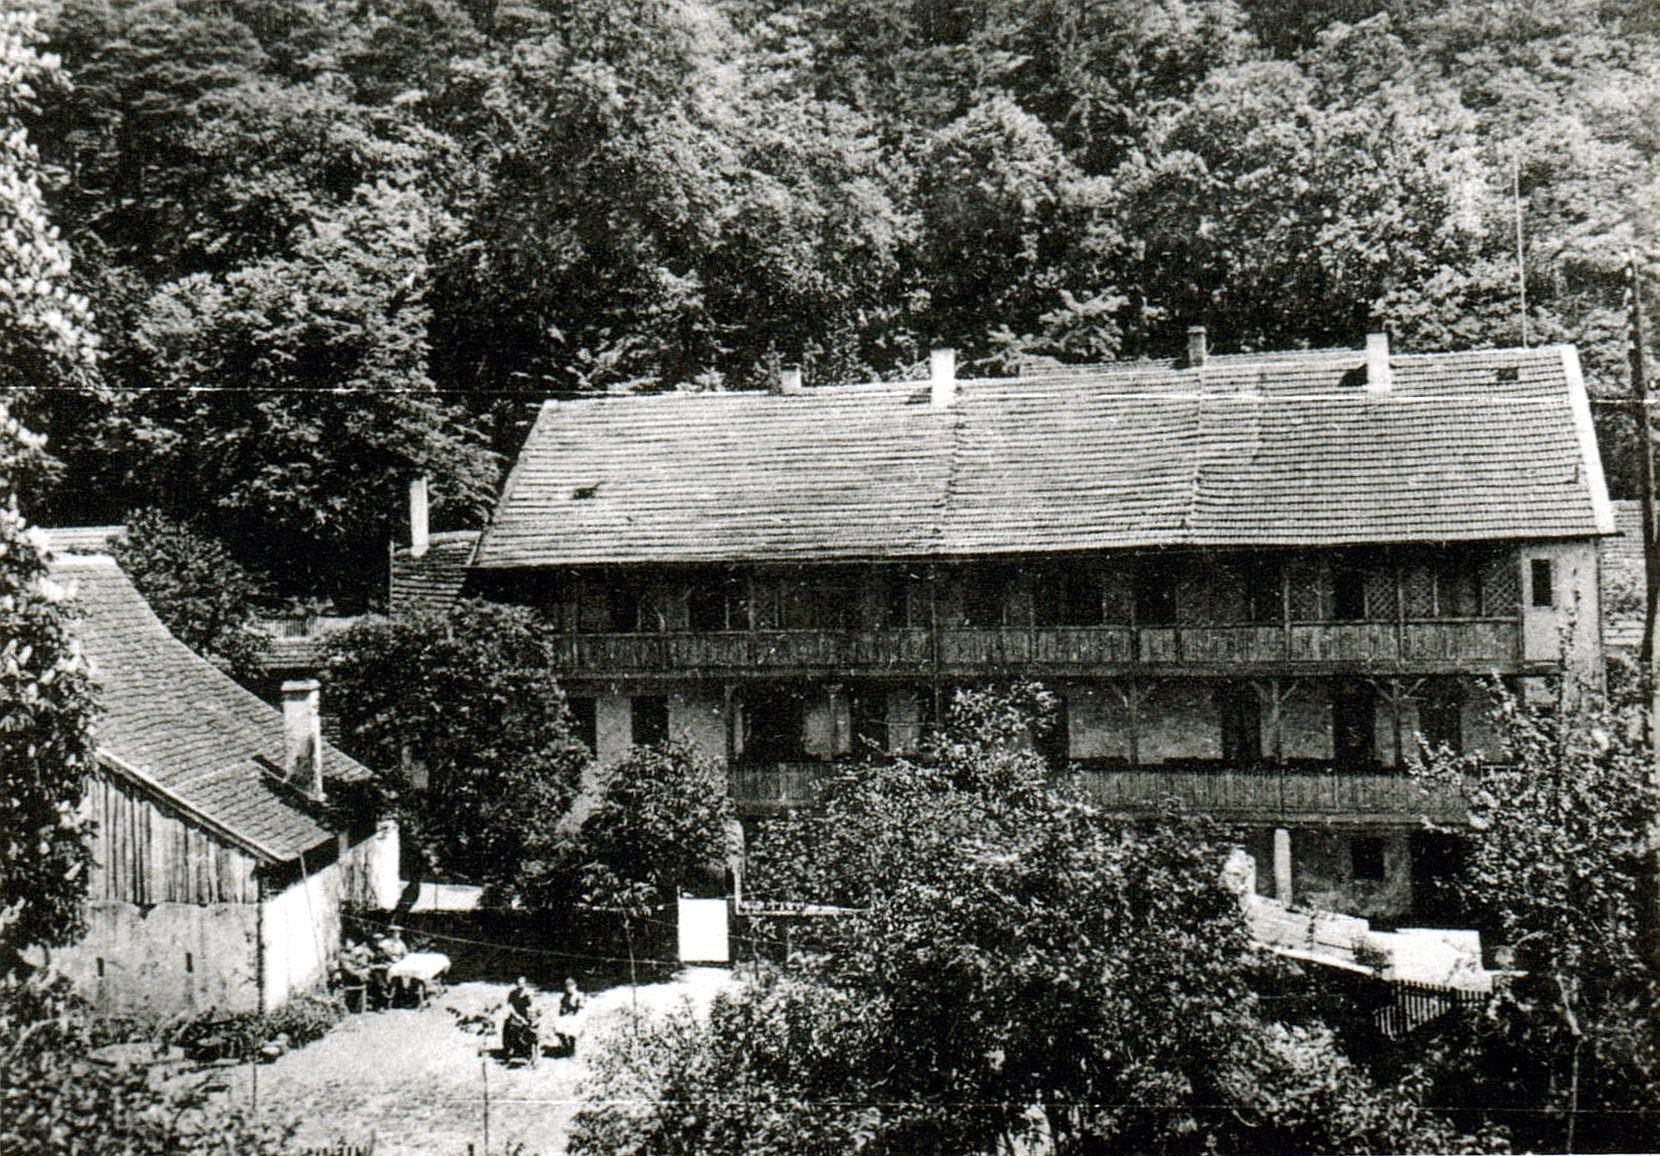 Foto-Sammlung Adolf Krapp, Ordner 2: Hardenburg , 1941 (Museumsgesellschaft Bad Dürkheim e.V. CC BY-NC-SA)